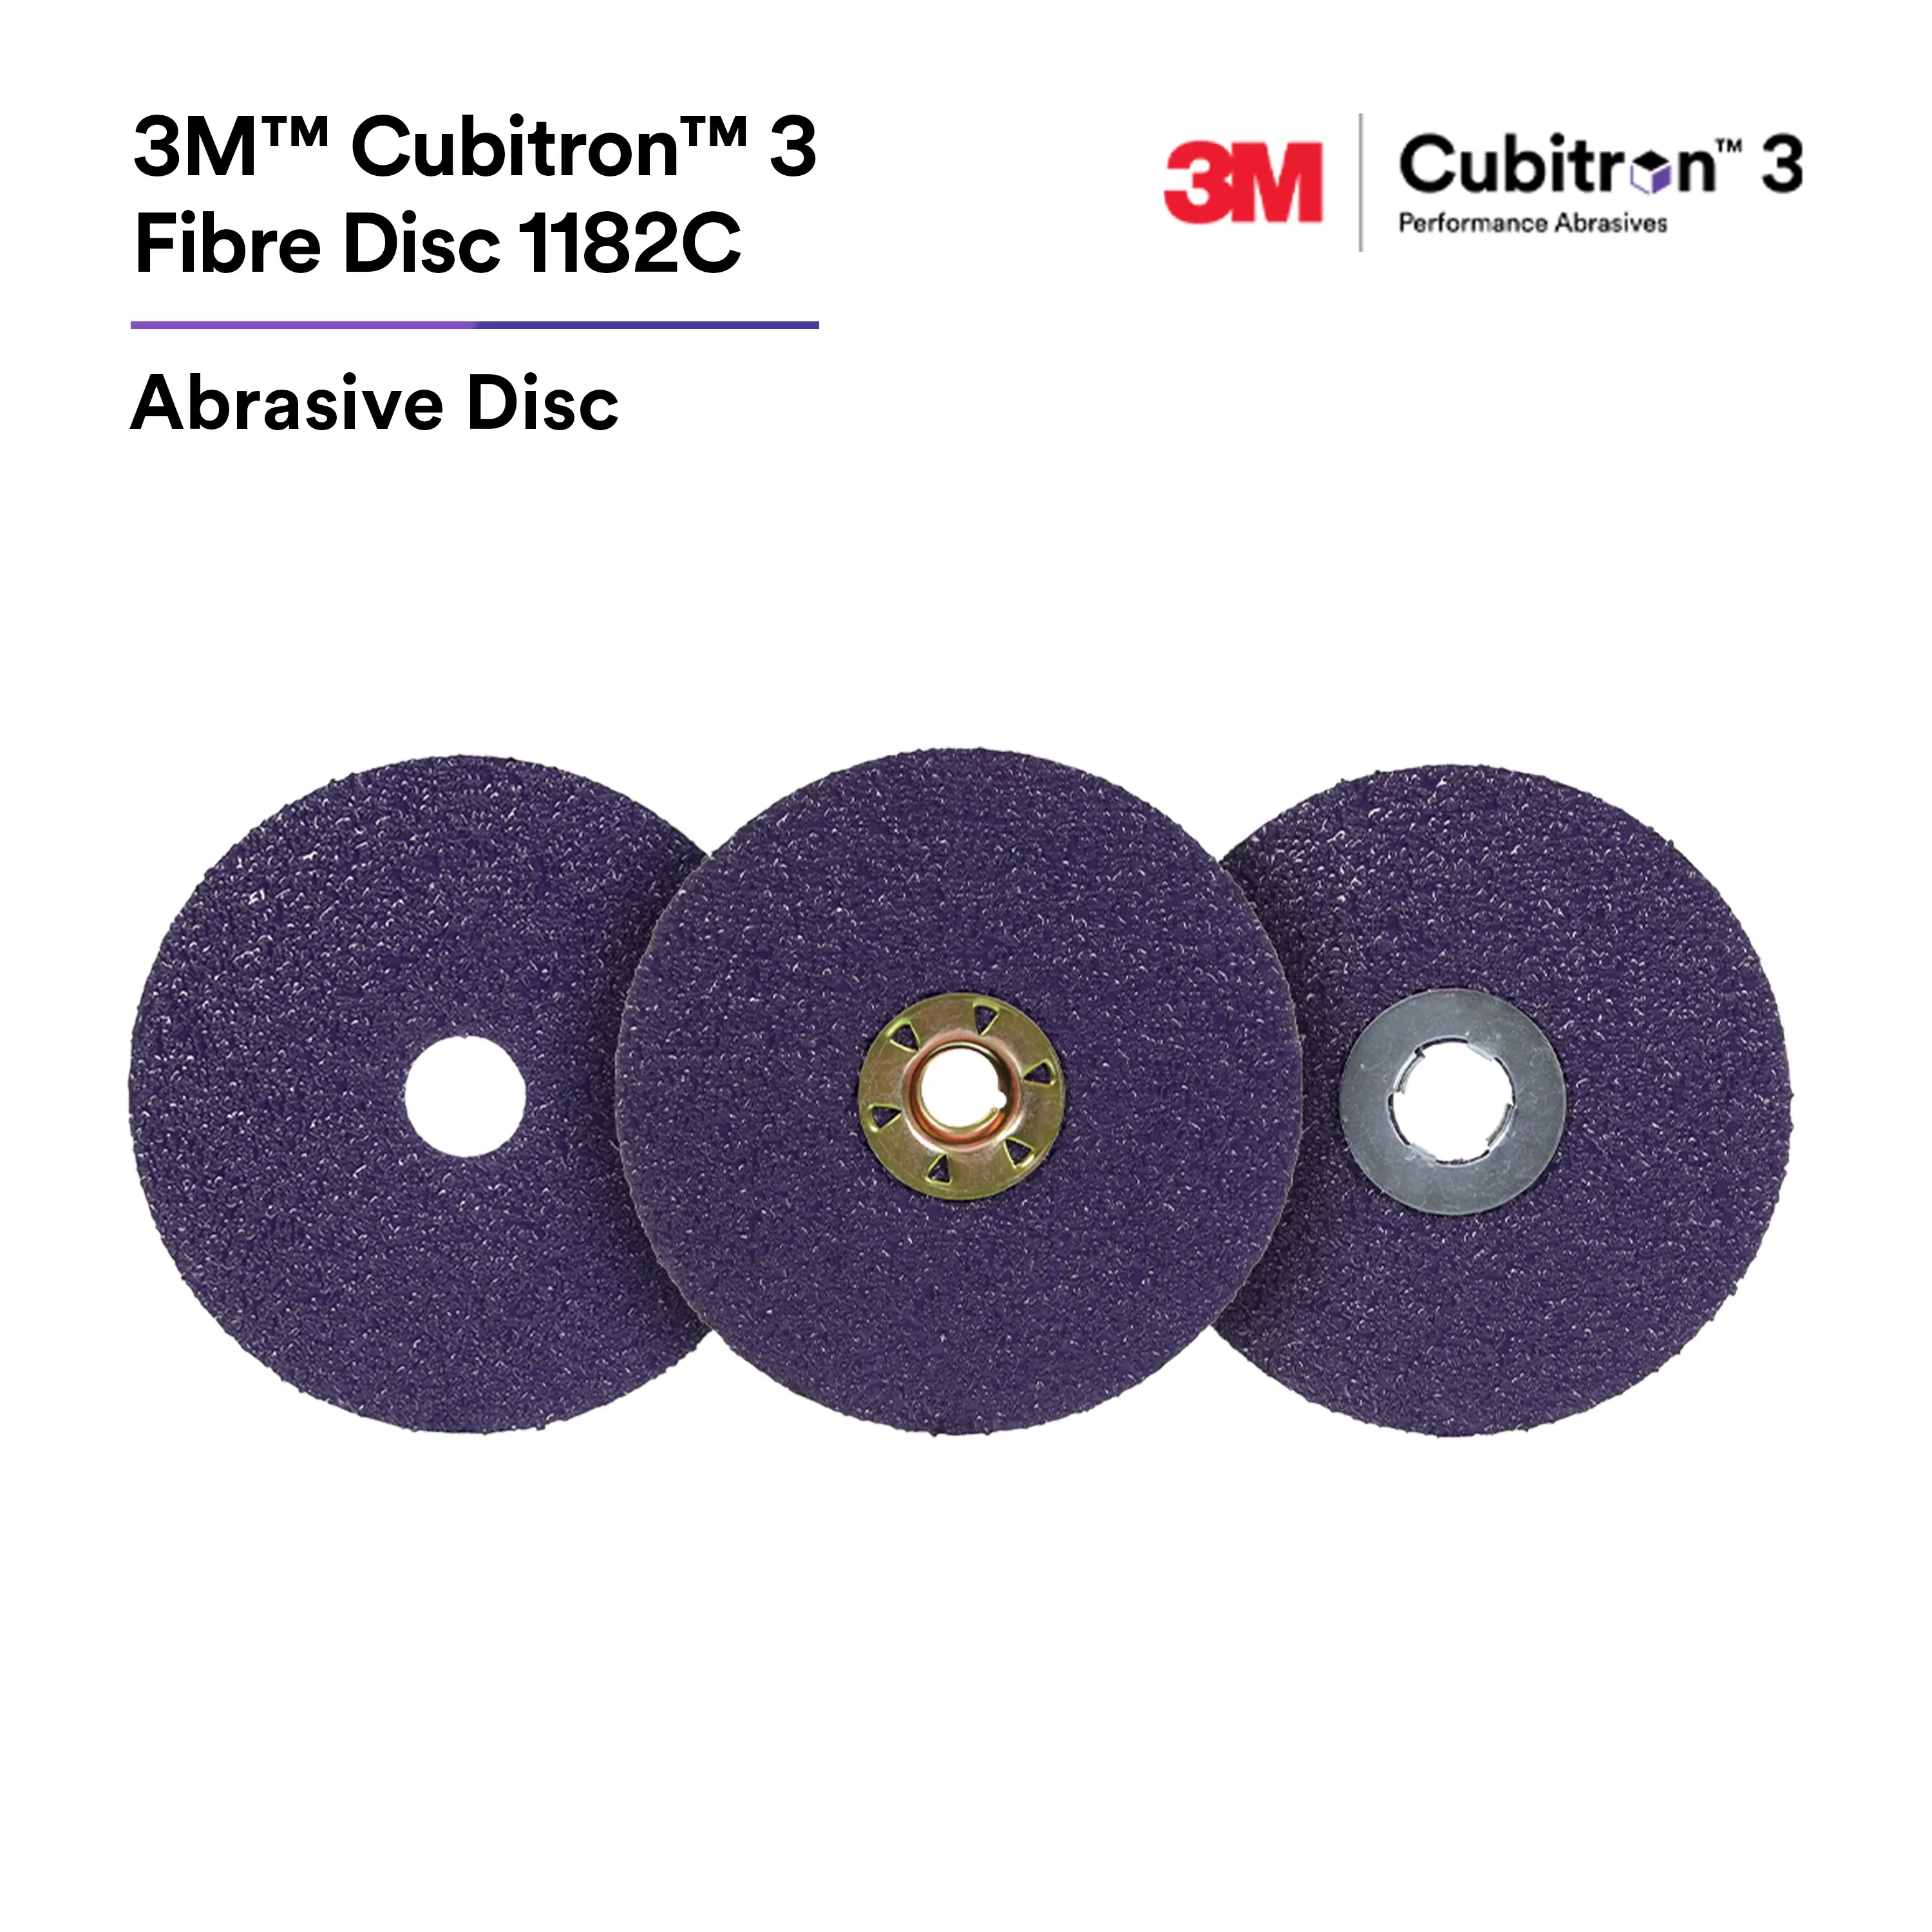 SKU 7100309799 | 3M™ Cubitron™ 3 Fibre Disc 1182C